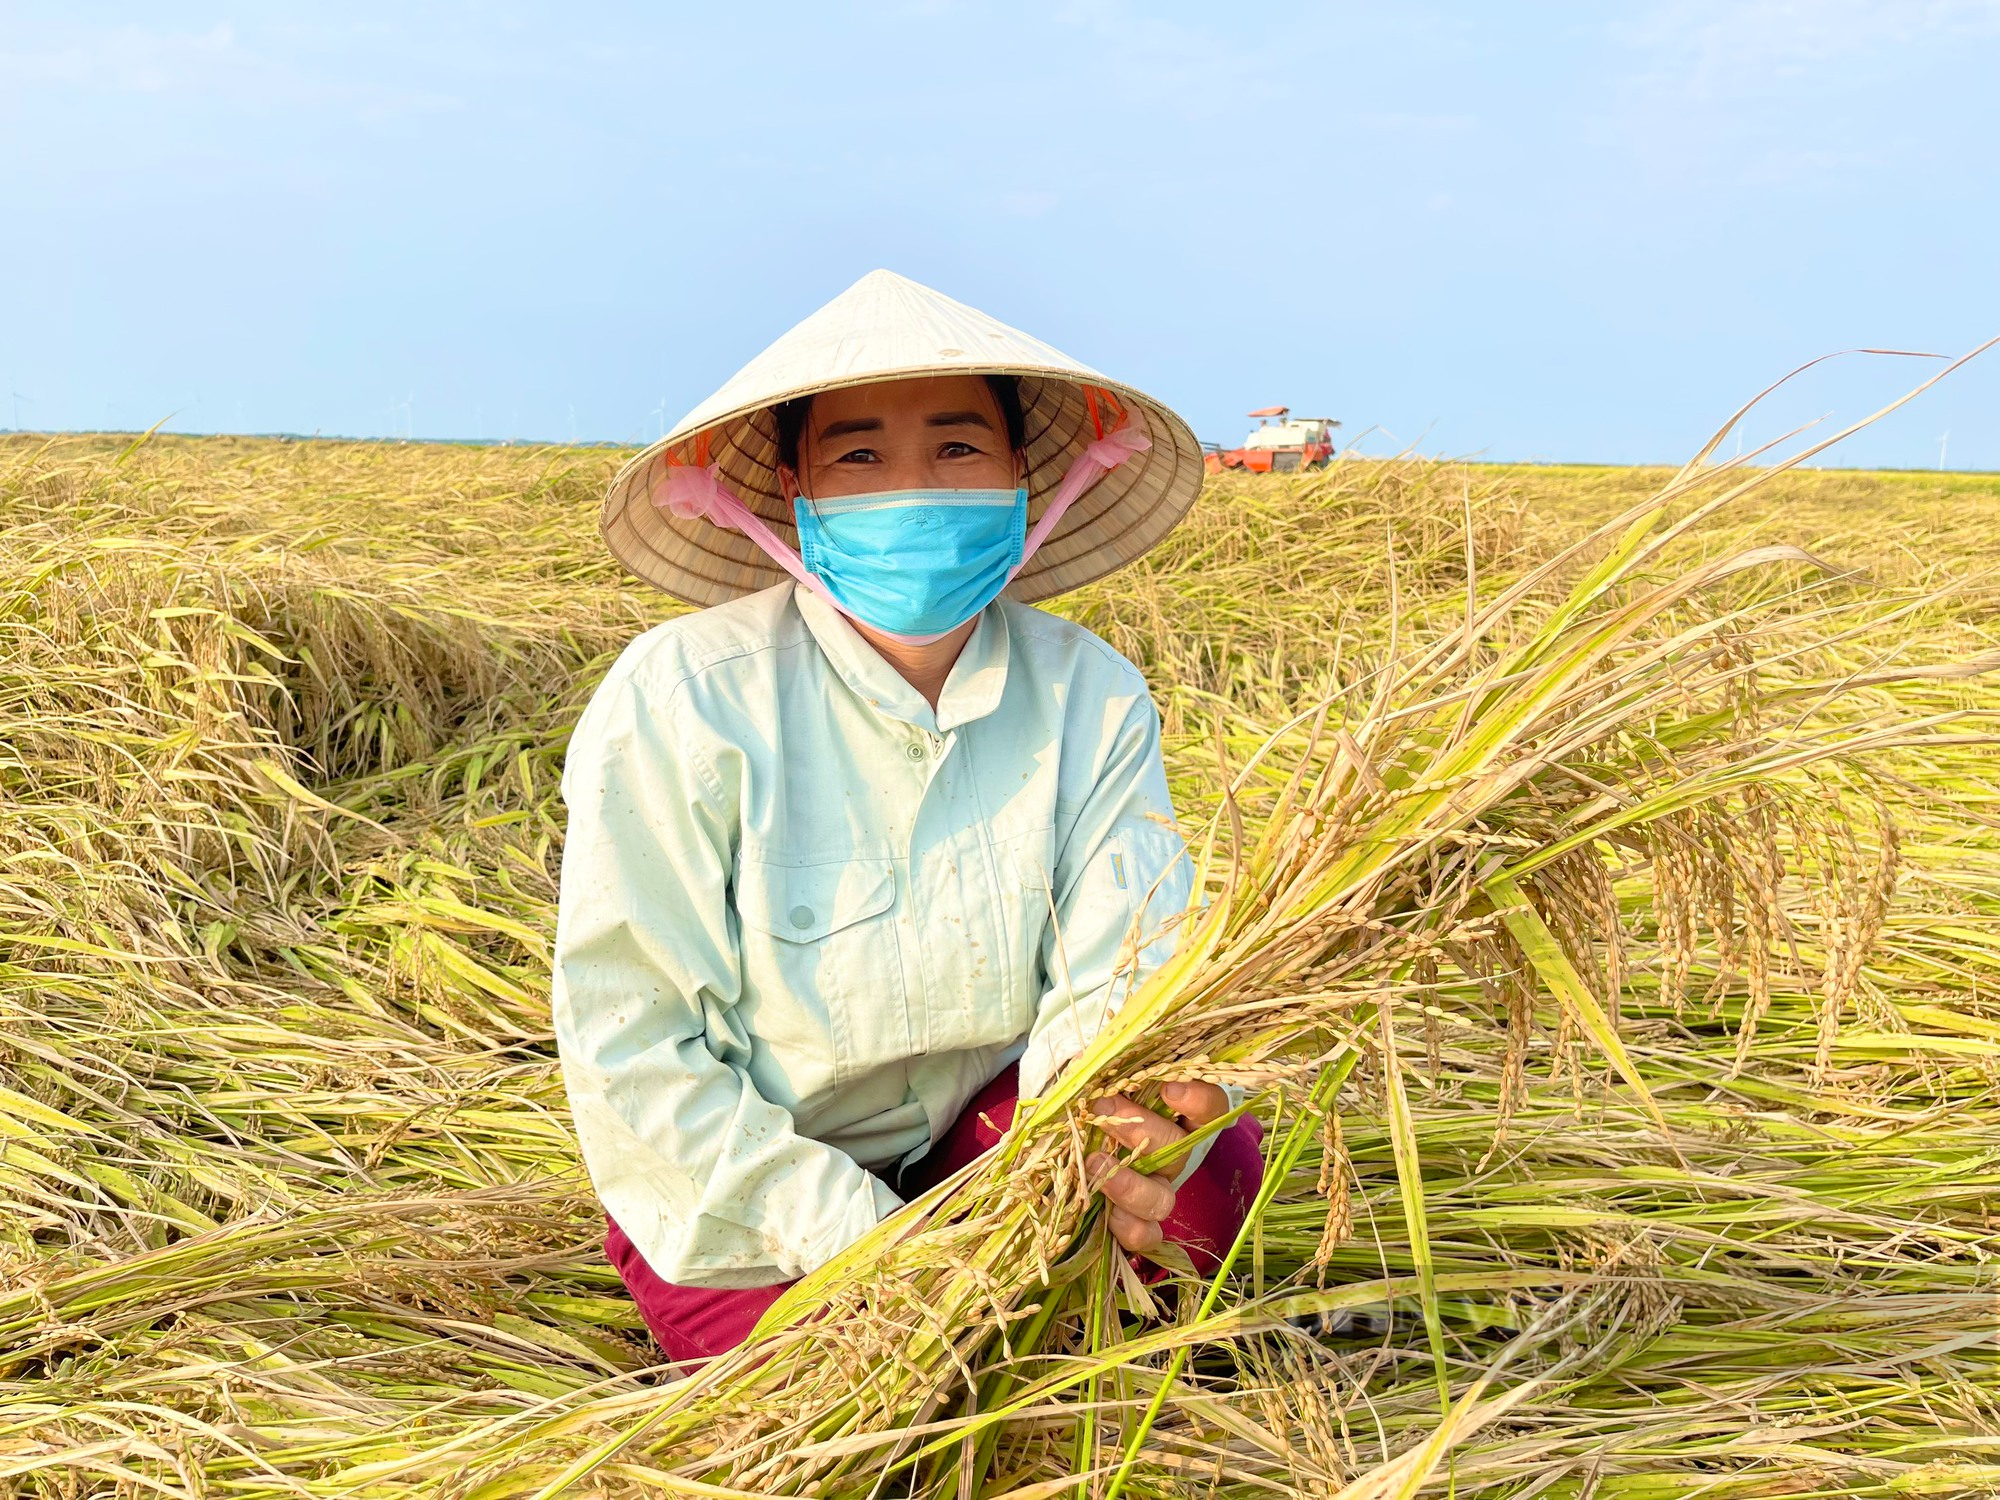 Quảng Bình: Công ty sông Gianh đồng hành cùng nông dân trồng lúa, giông lốc làm ngã rạp liền tới giúp gặt, thu mua luôn - Ảnh 1.